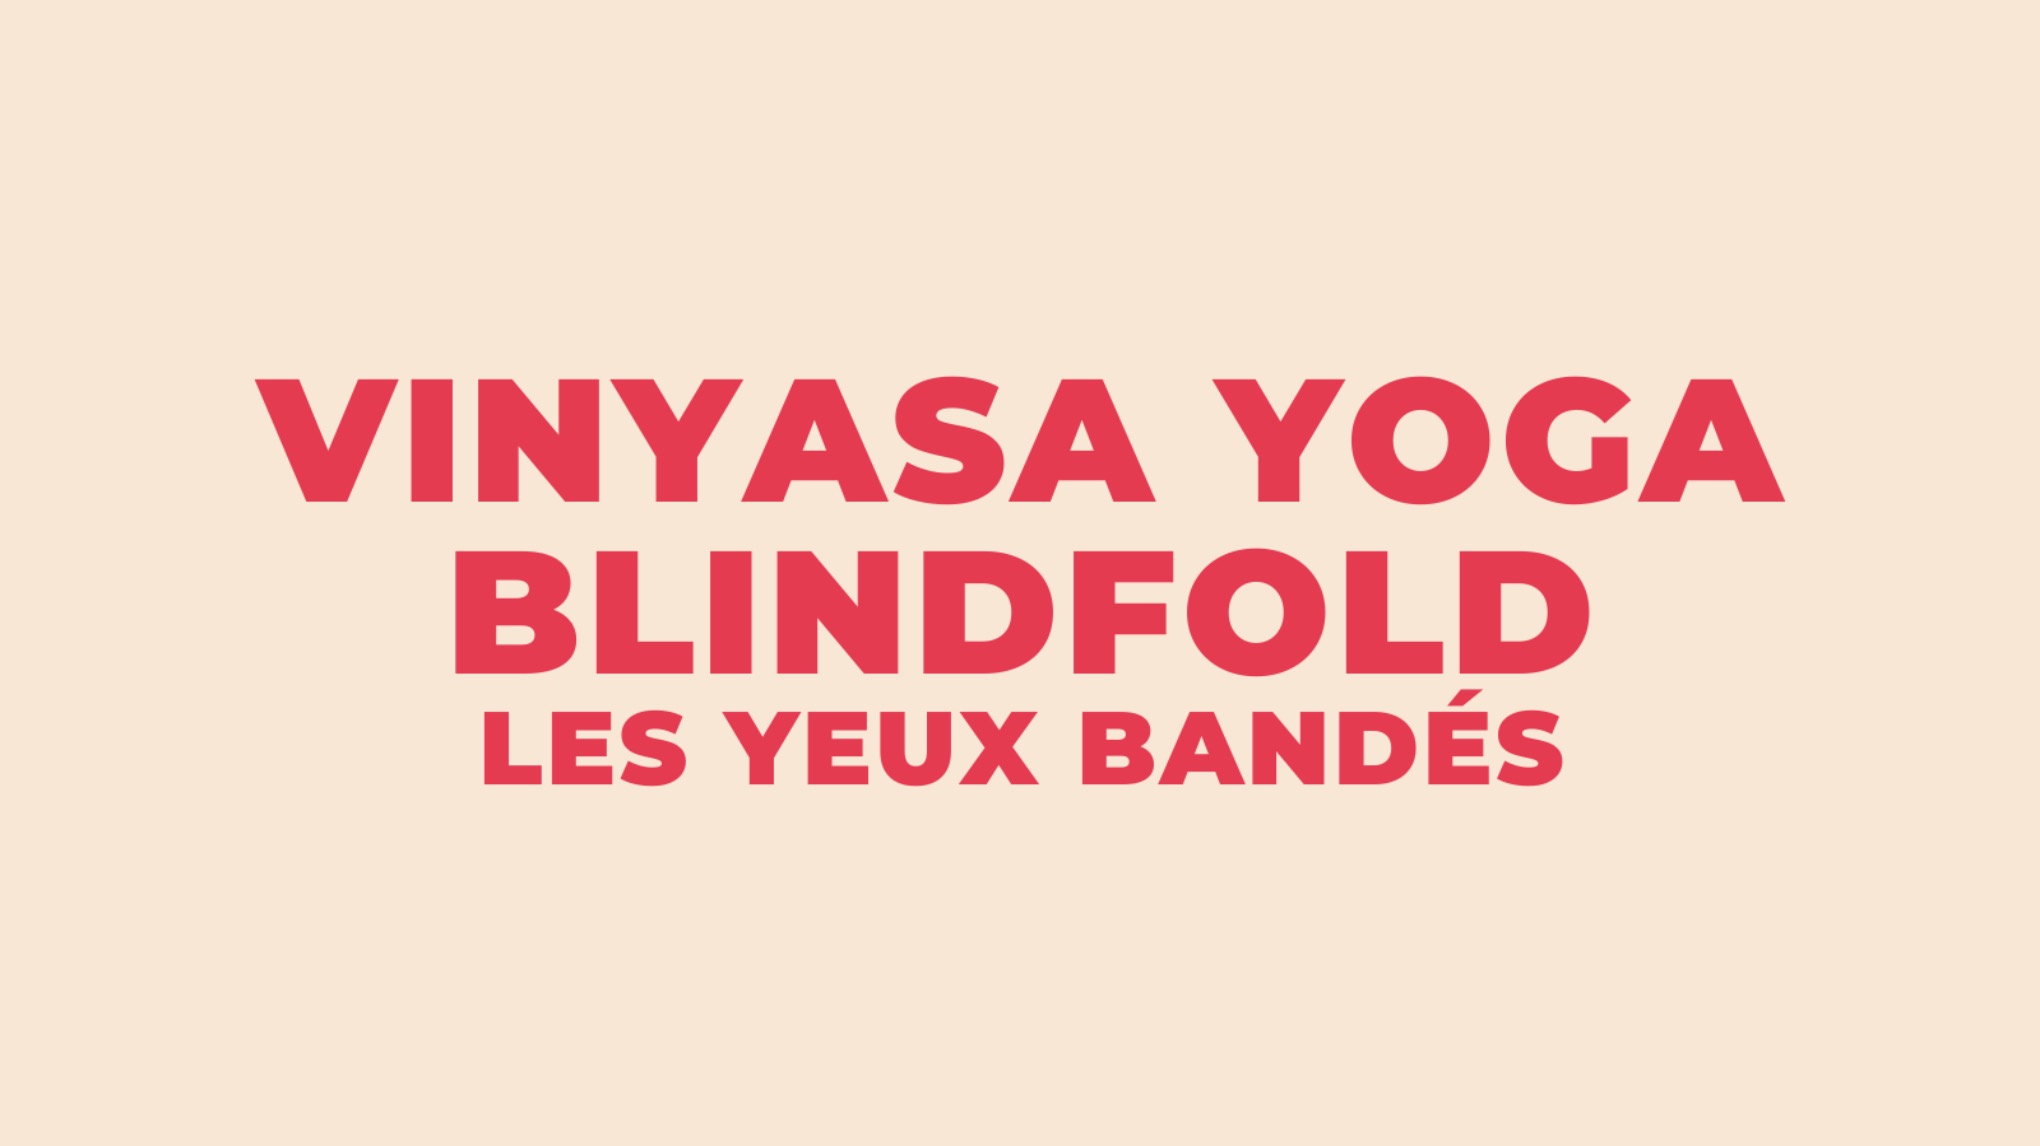 Vinyasa Yoga - Blindfold (les yeux bandés)